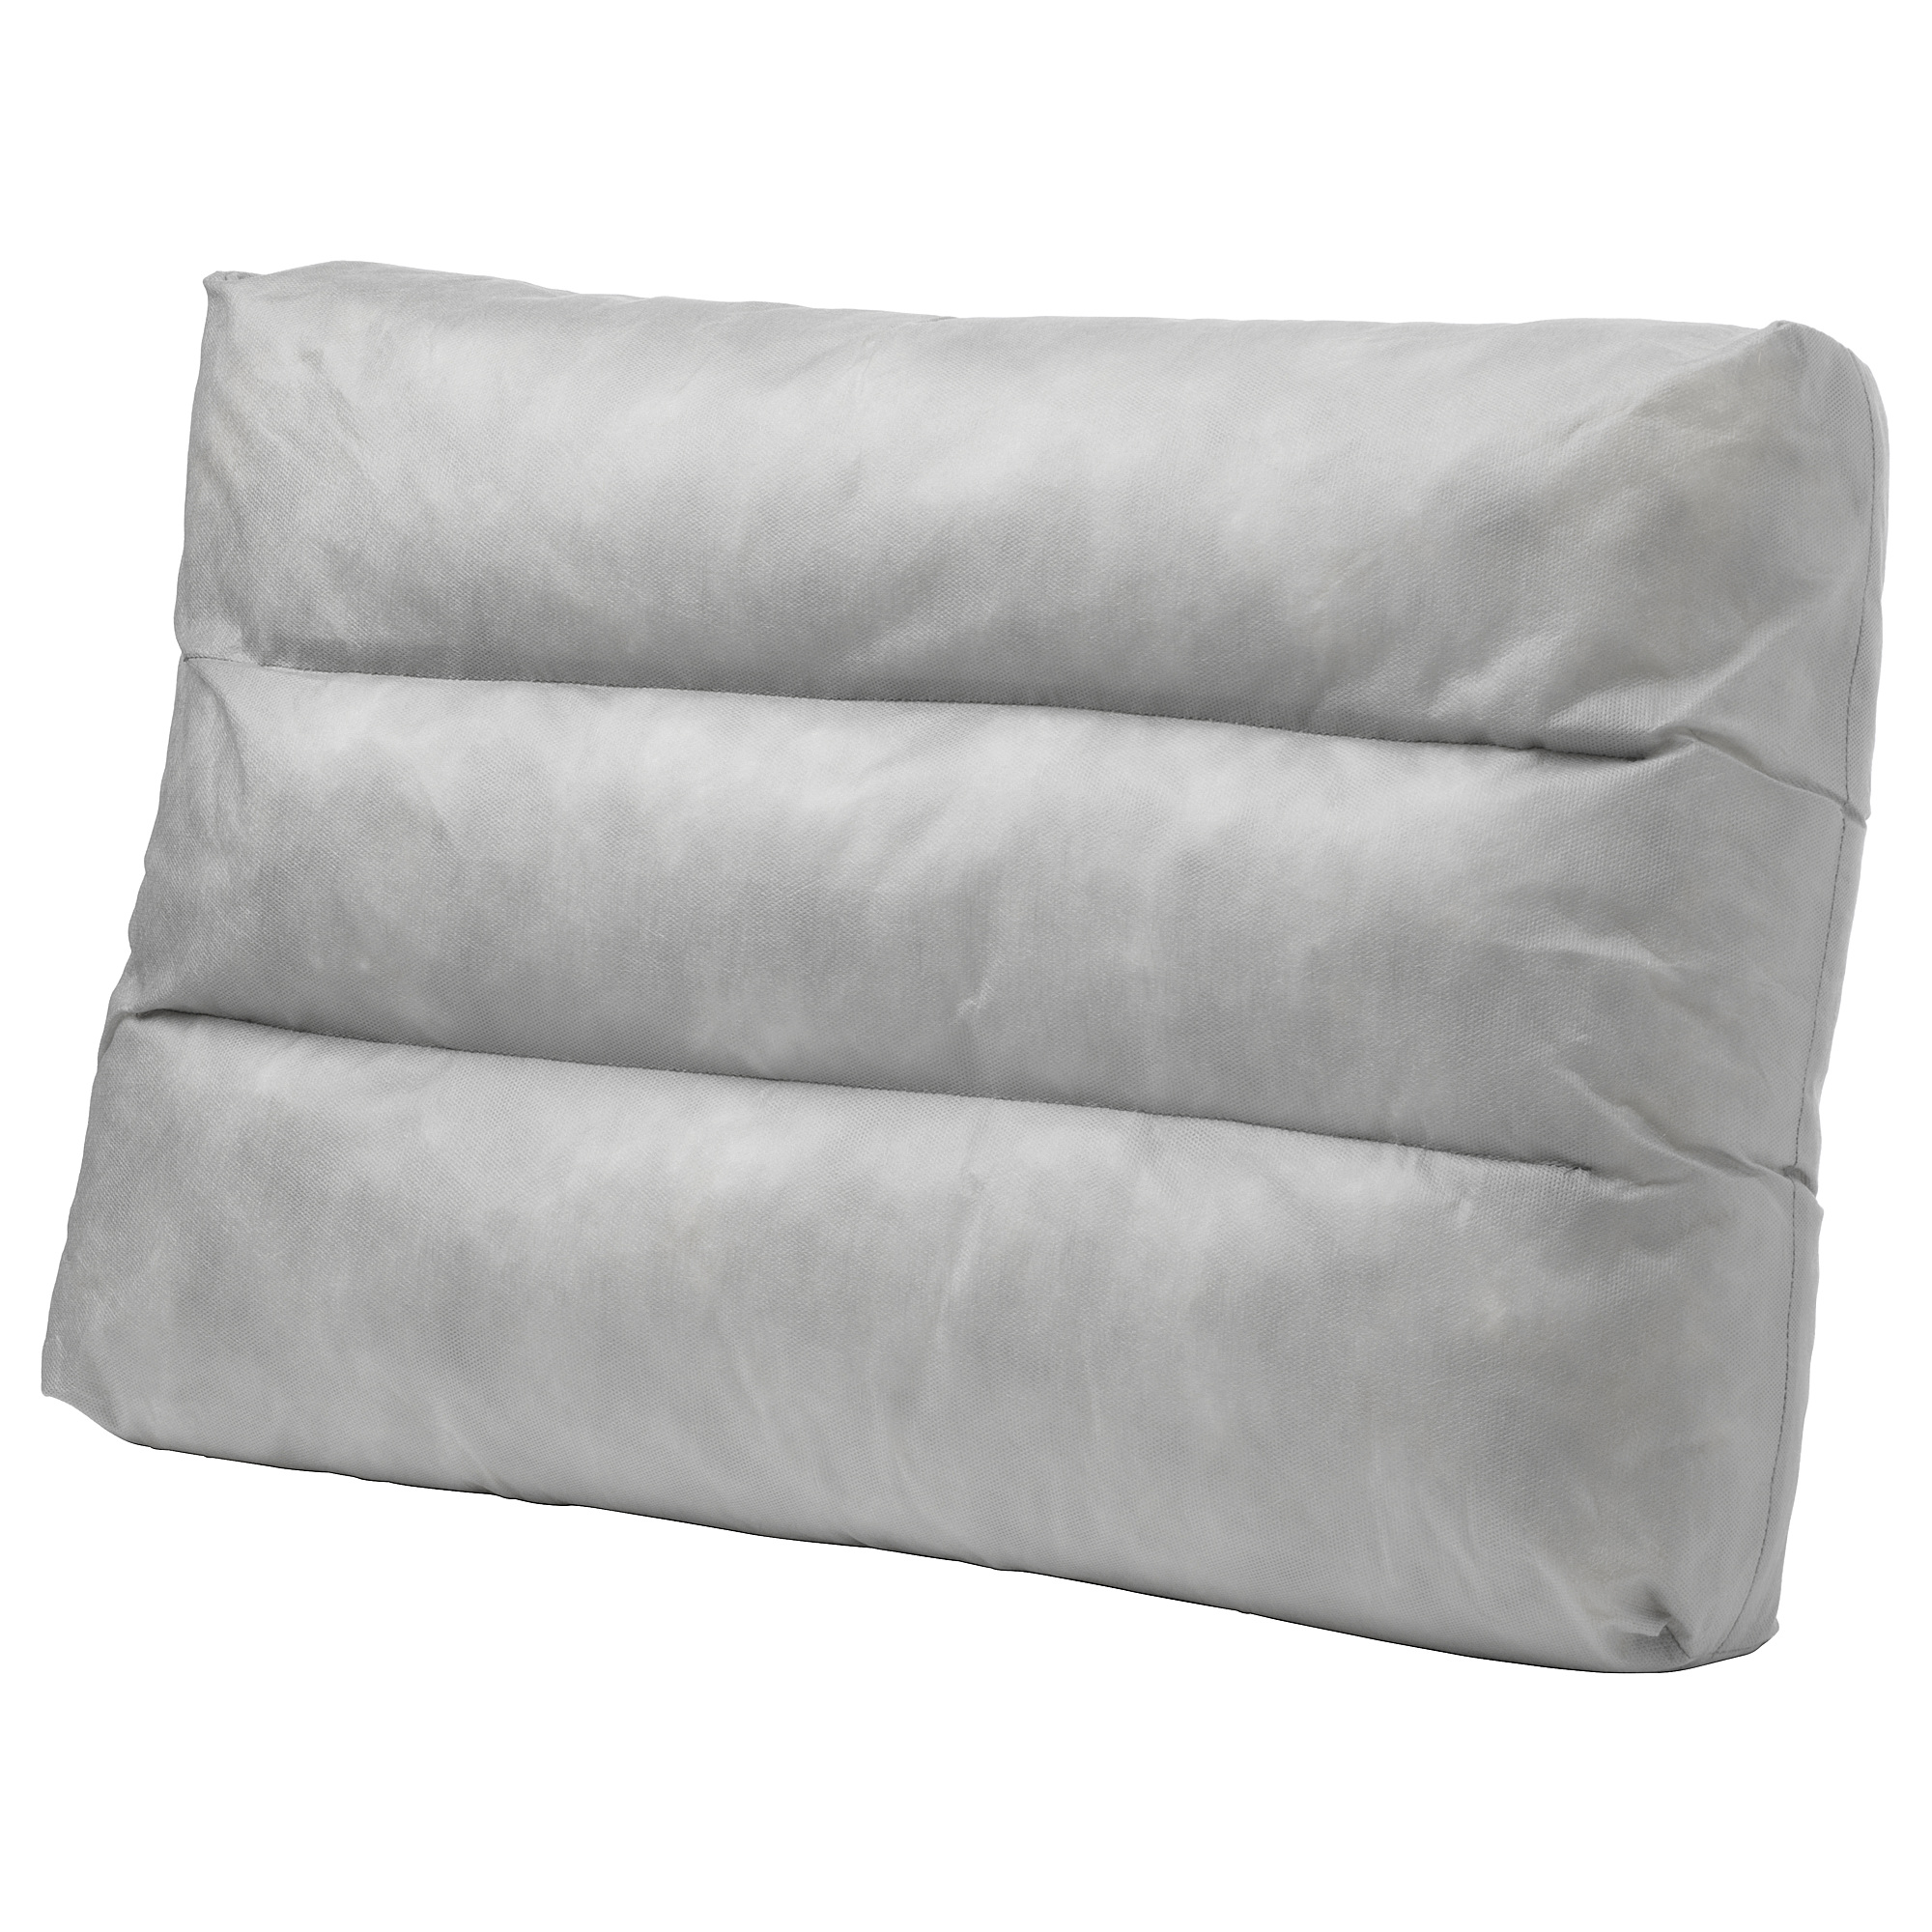 DUVHOLMEN inner cushion for back cushion